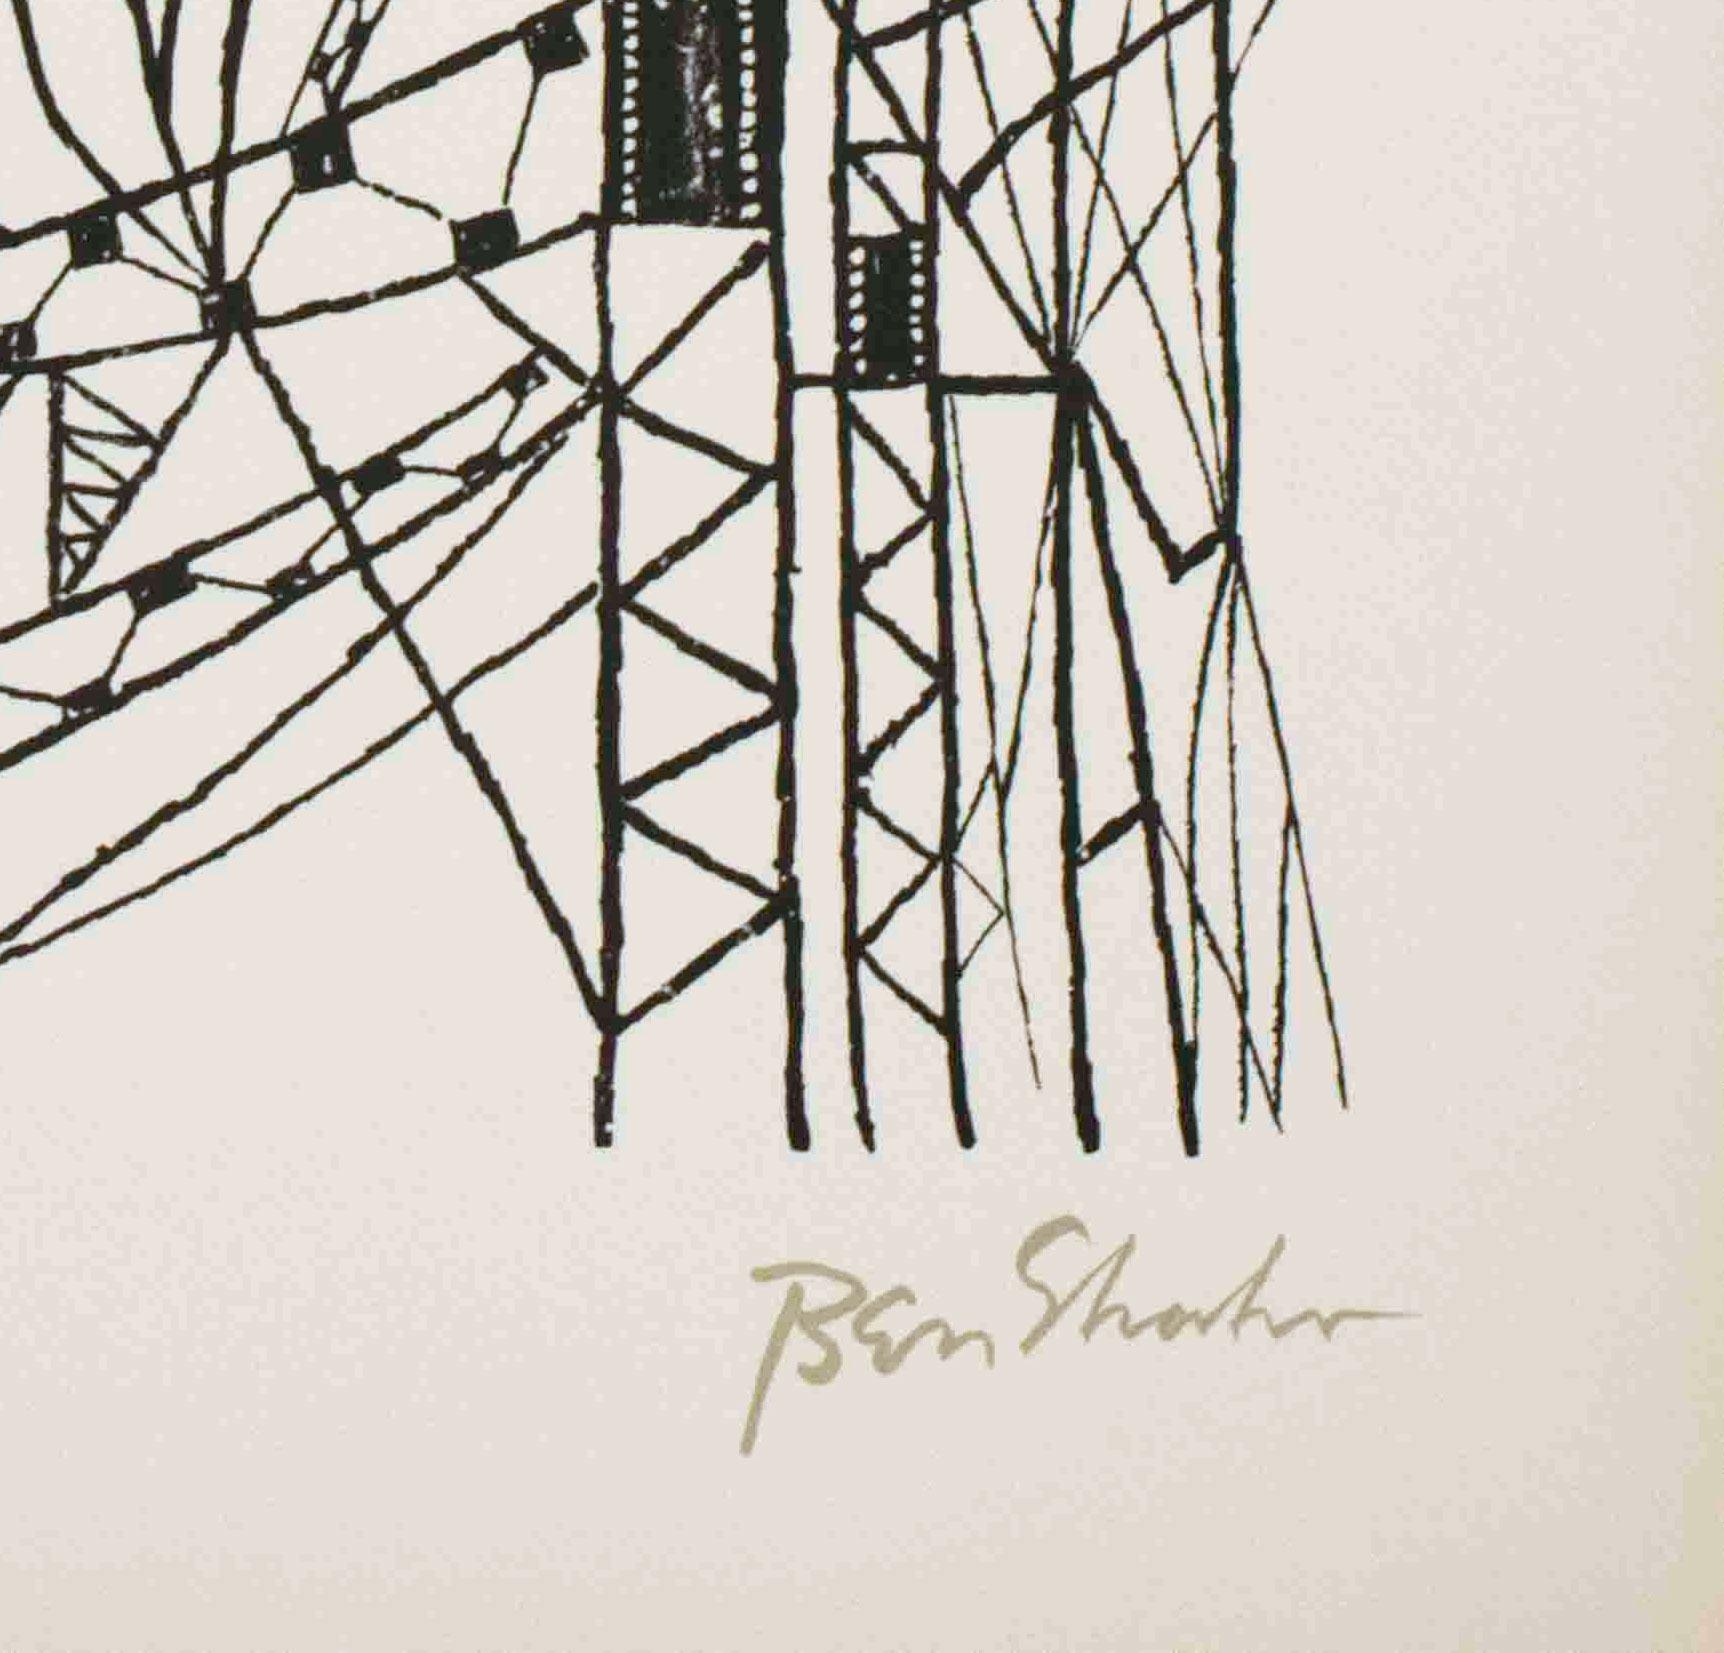 Viele Städte aus dem Rilke-Portfolio (Amerikanischer Realismus), Print, von Ben Shahn